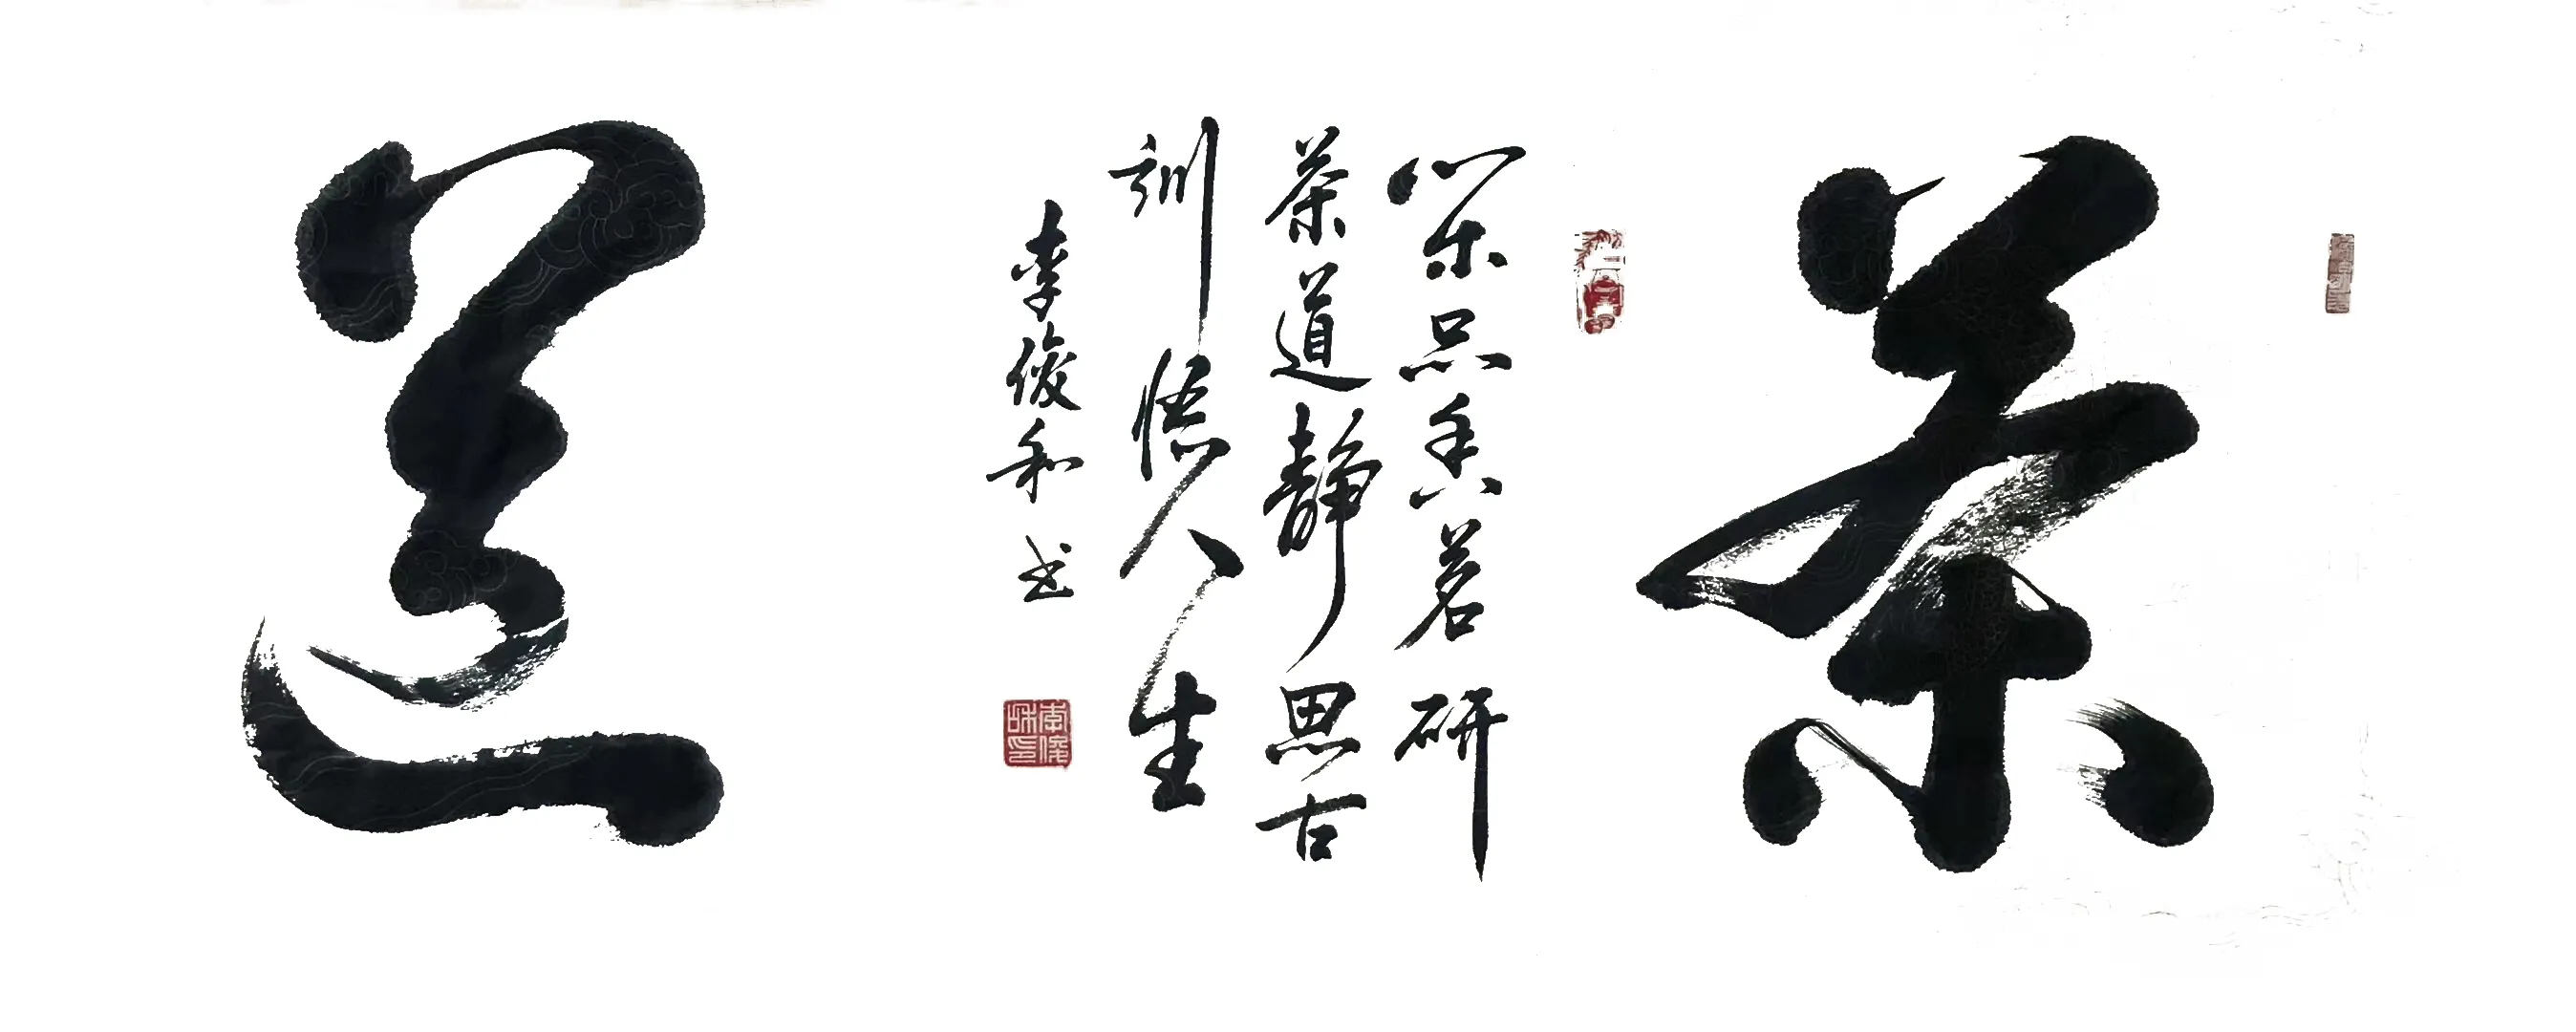 中国楹联学会中宣盛世文化艺术交流中心书画风采展示——李俊和